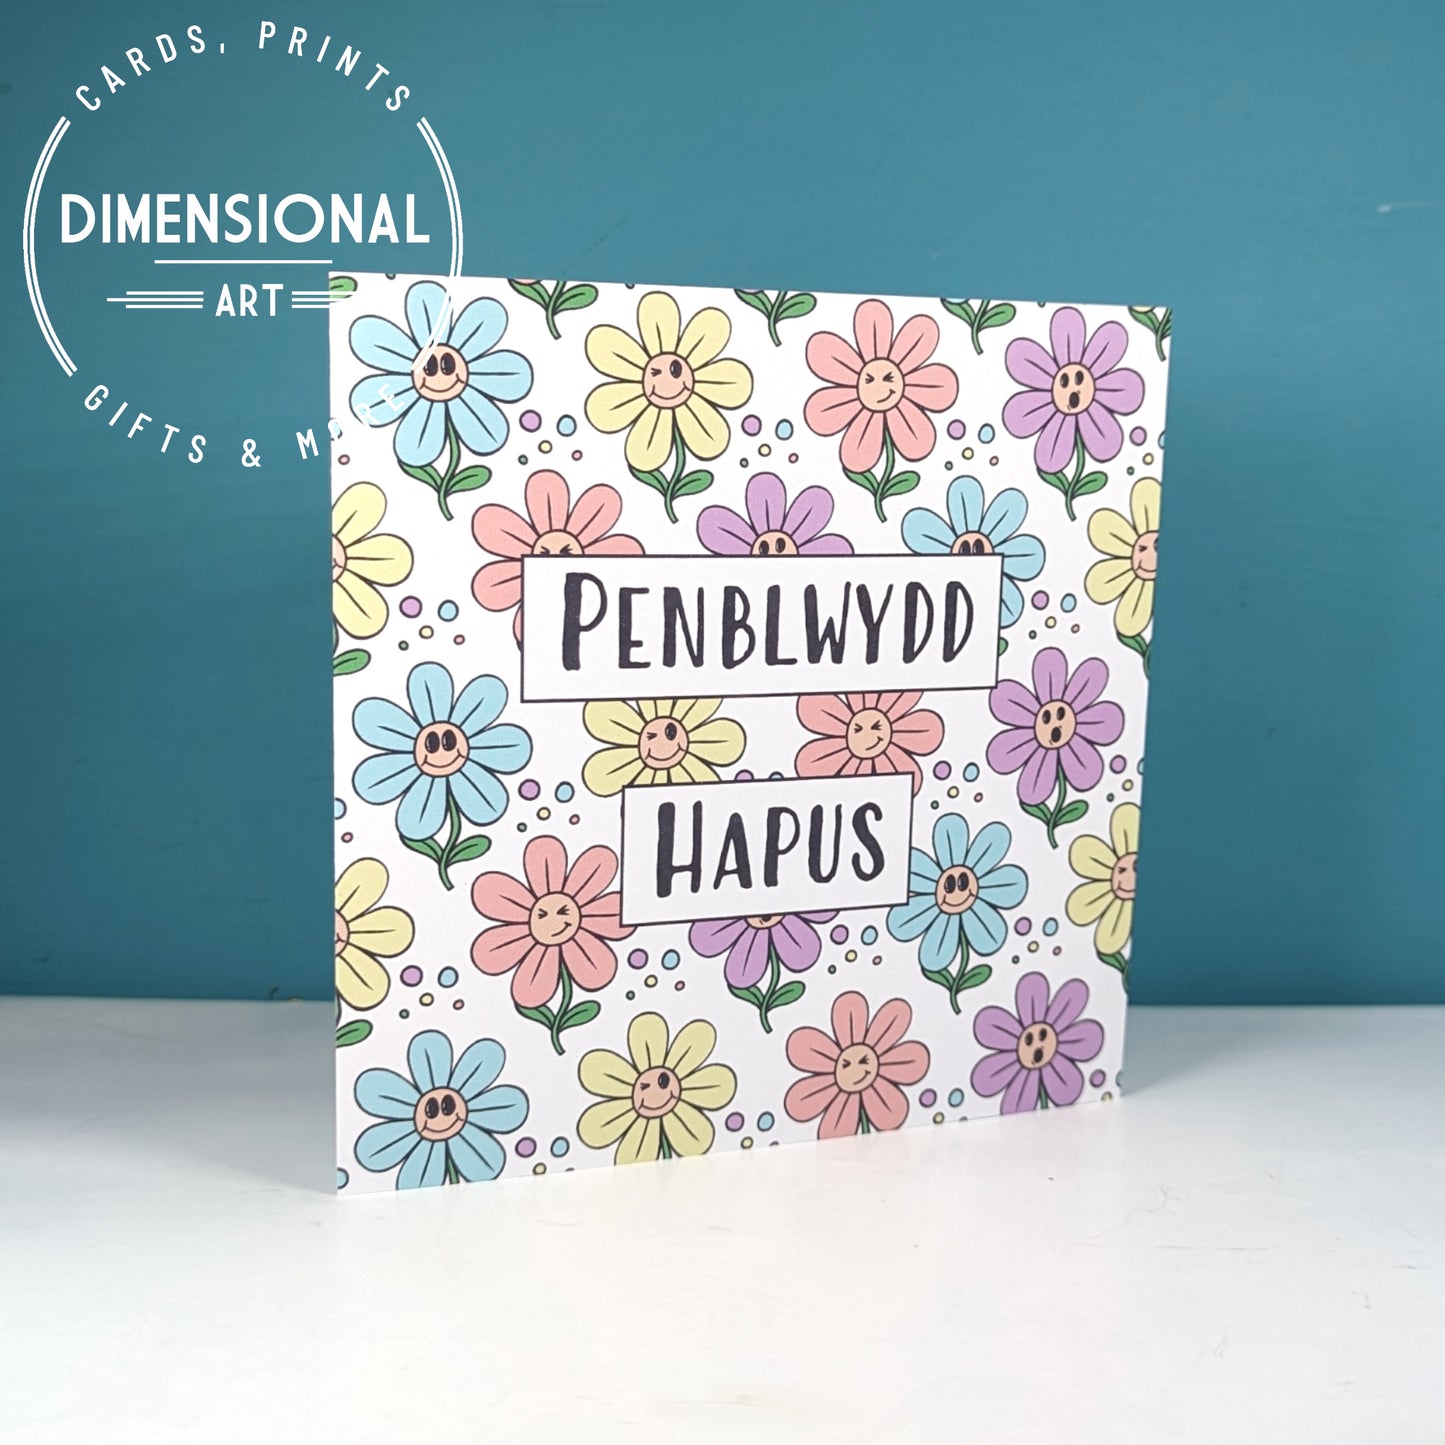 Happy Flowers Penblwydd Hapus (Birthday Card) Welsh Card